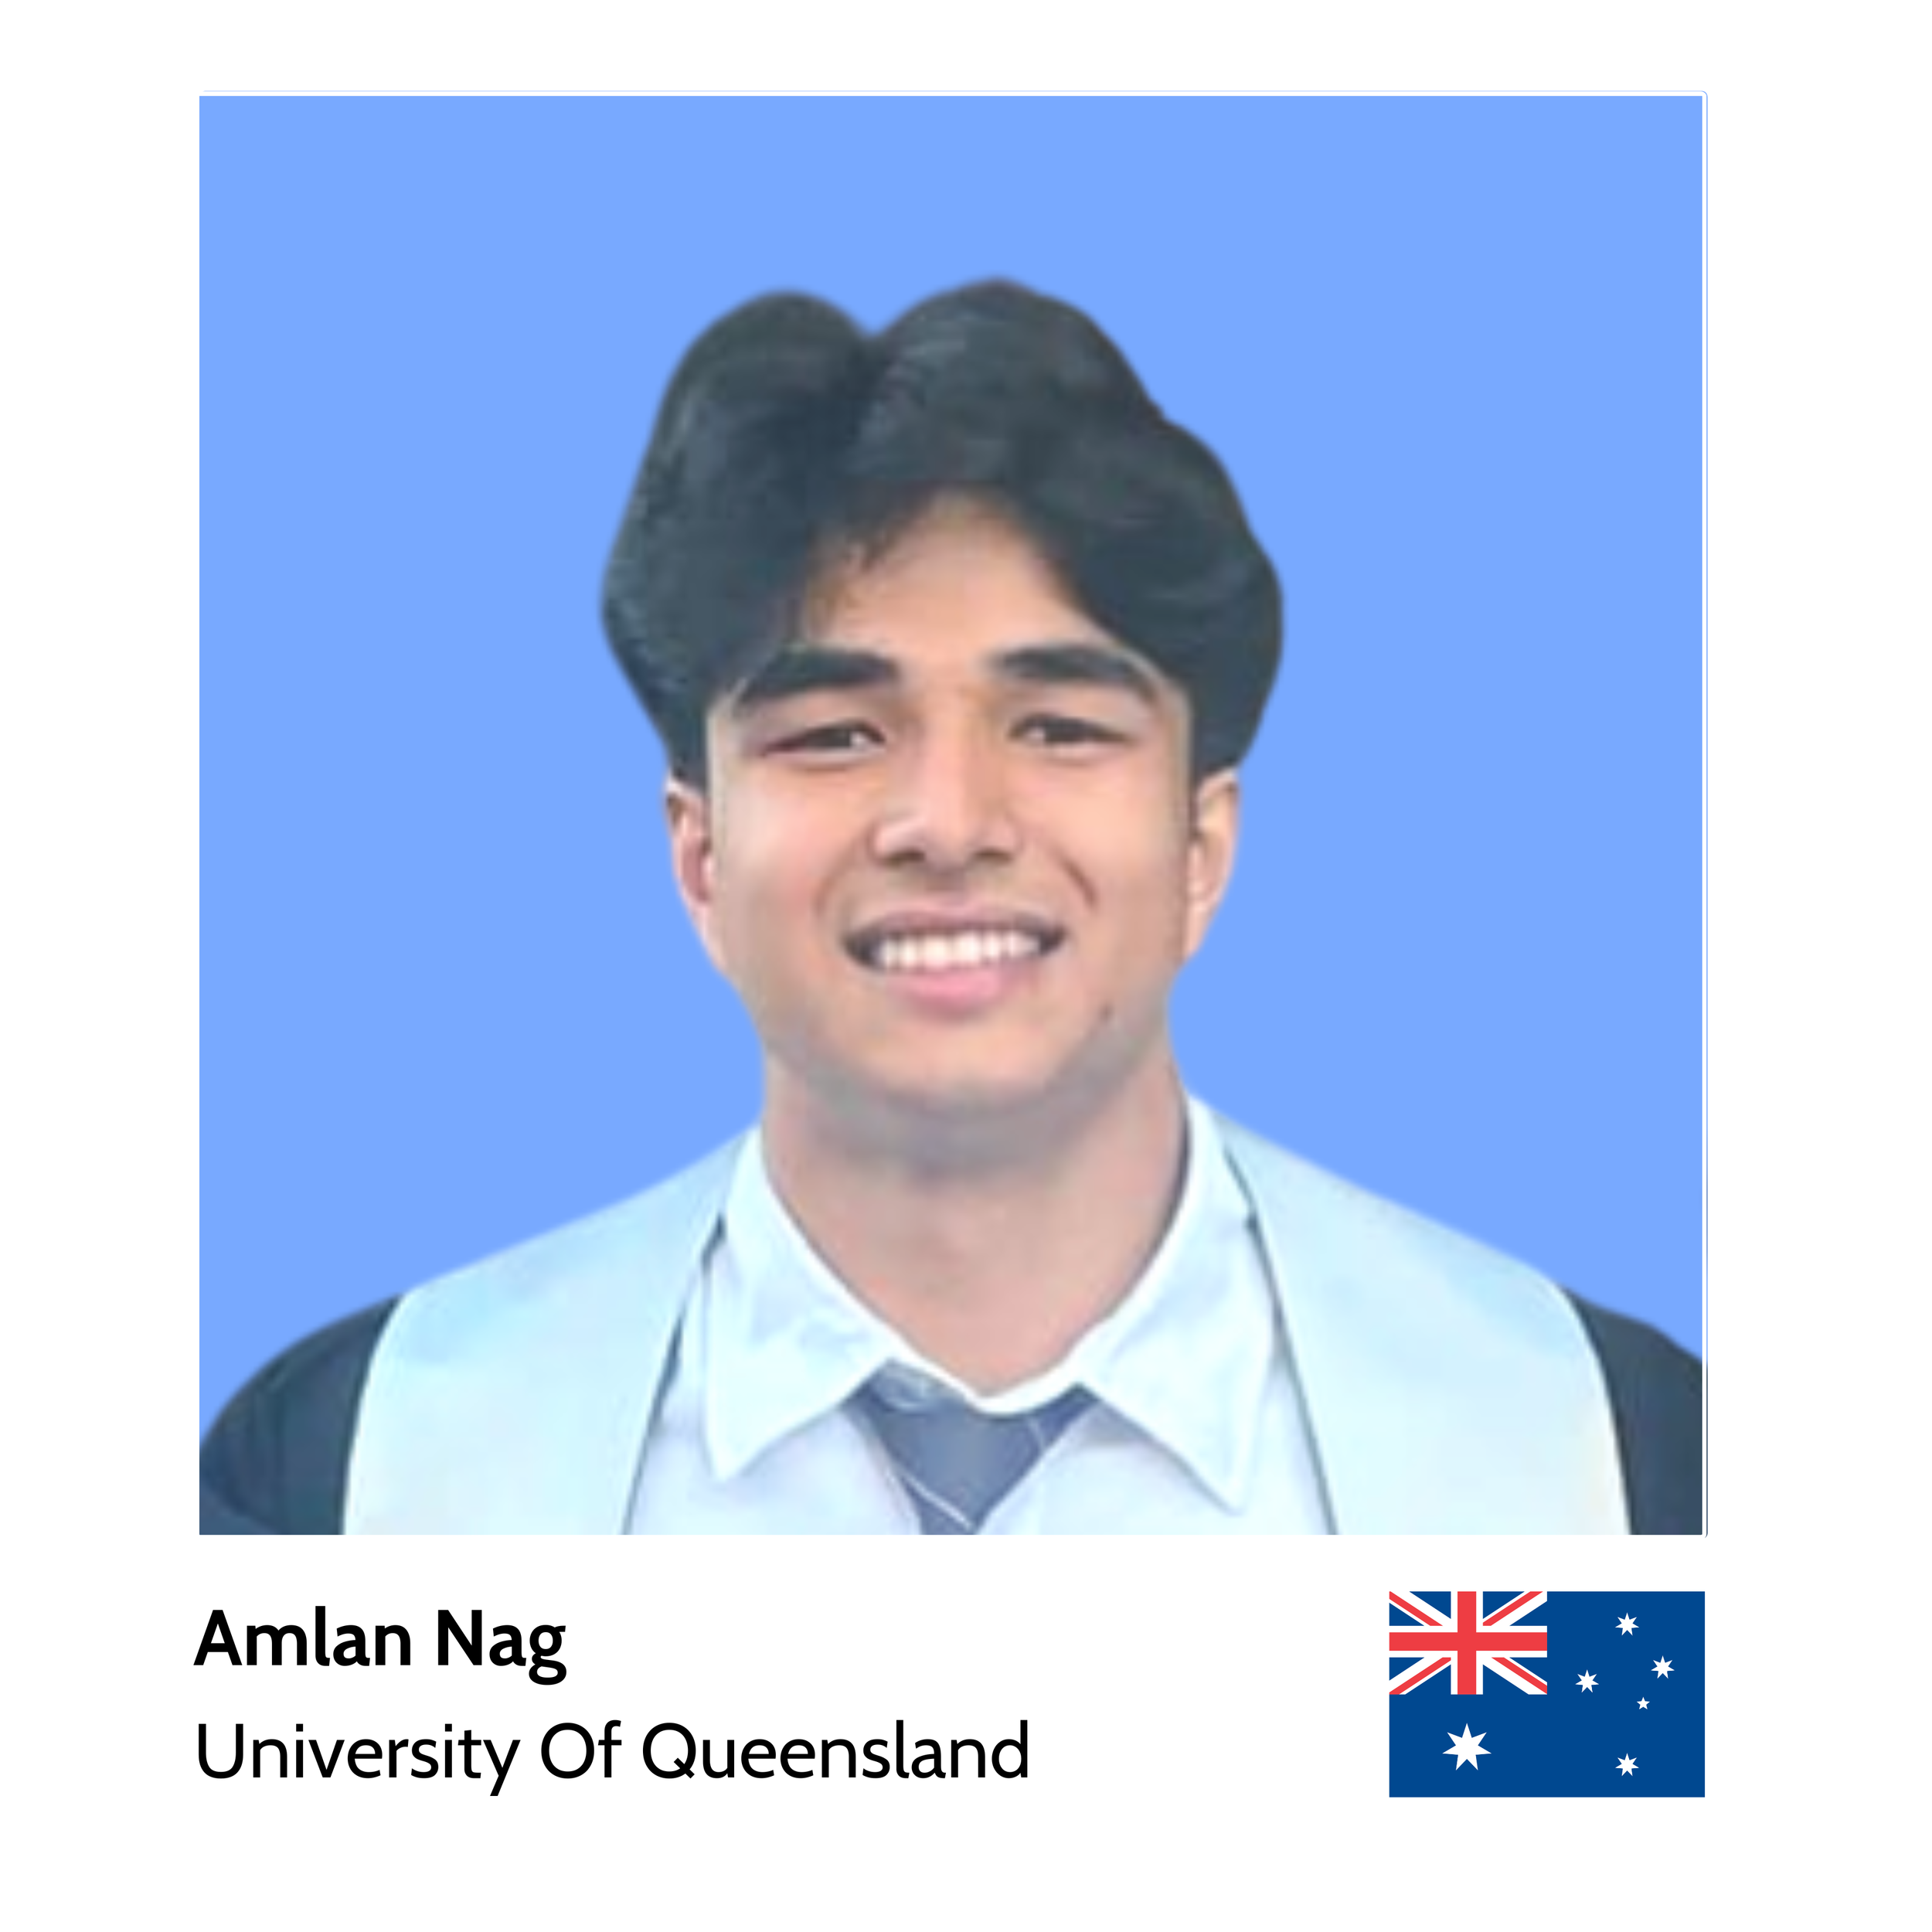 Your_Big_Year_ibm_z_student_ambassador_Amlan_Nag_Univeristy_of_Queensland.png